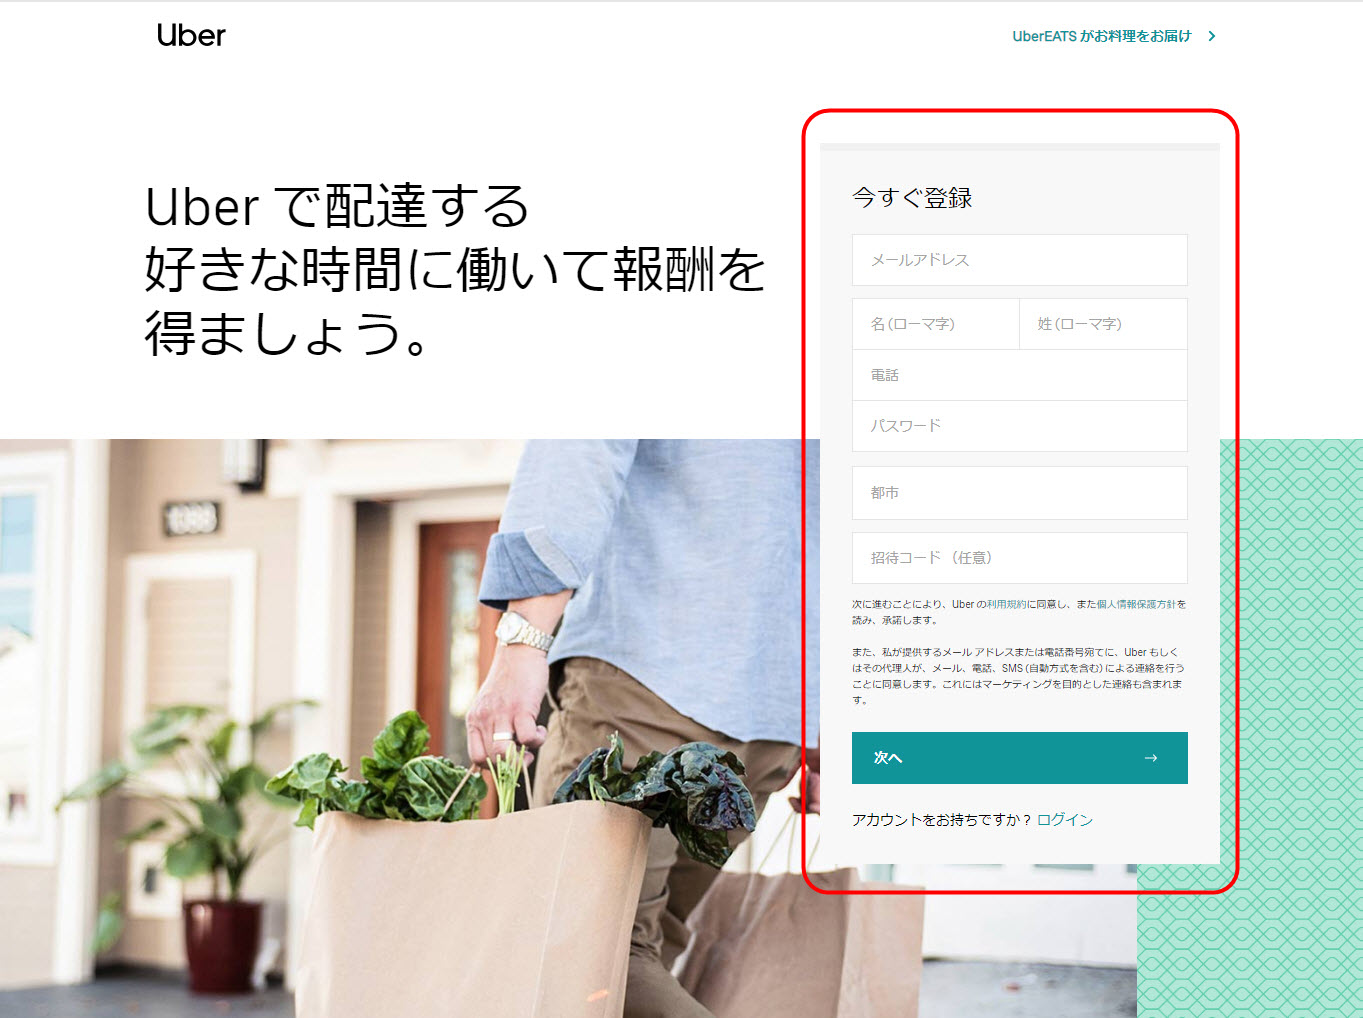 ウーバーイーツ 小平市 登録 東京都 小平 バイト エリア 始める 登録方法 始め方 配達パートナー 対象地域 範囲外 対応地域 サービスエリア外 UberEats Uber Eats